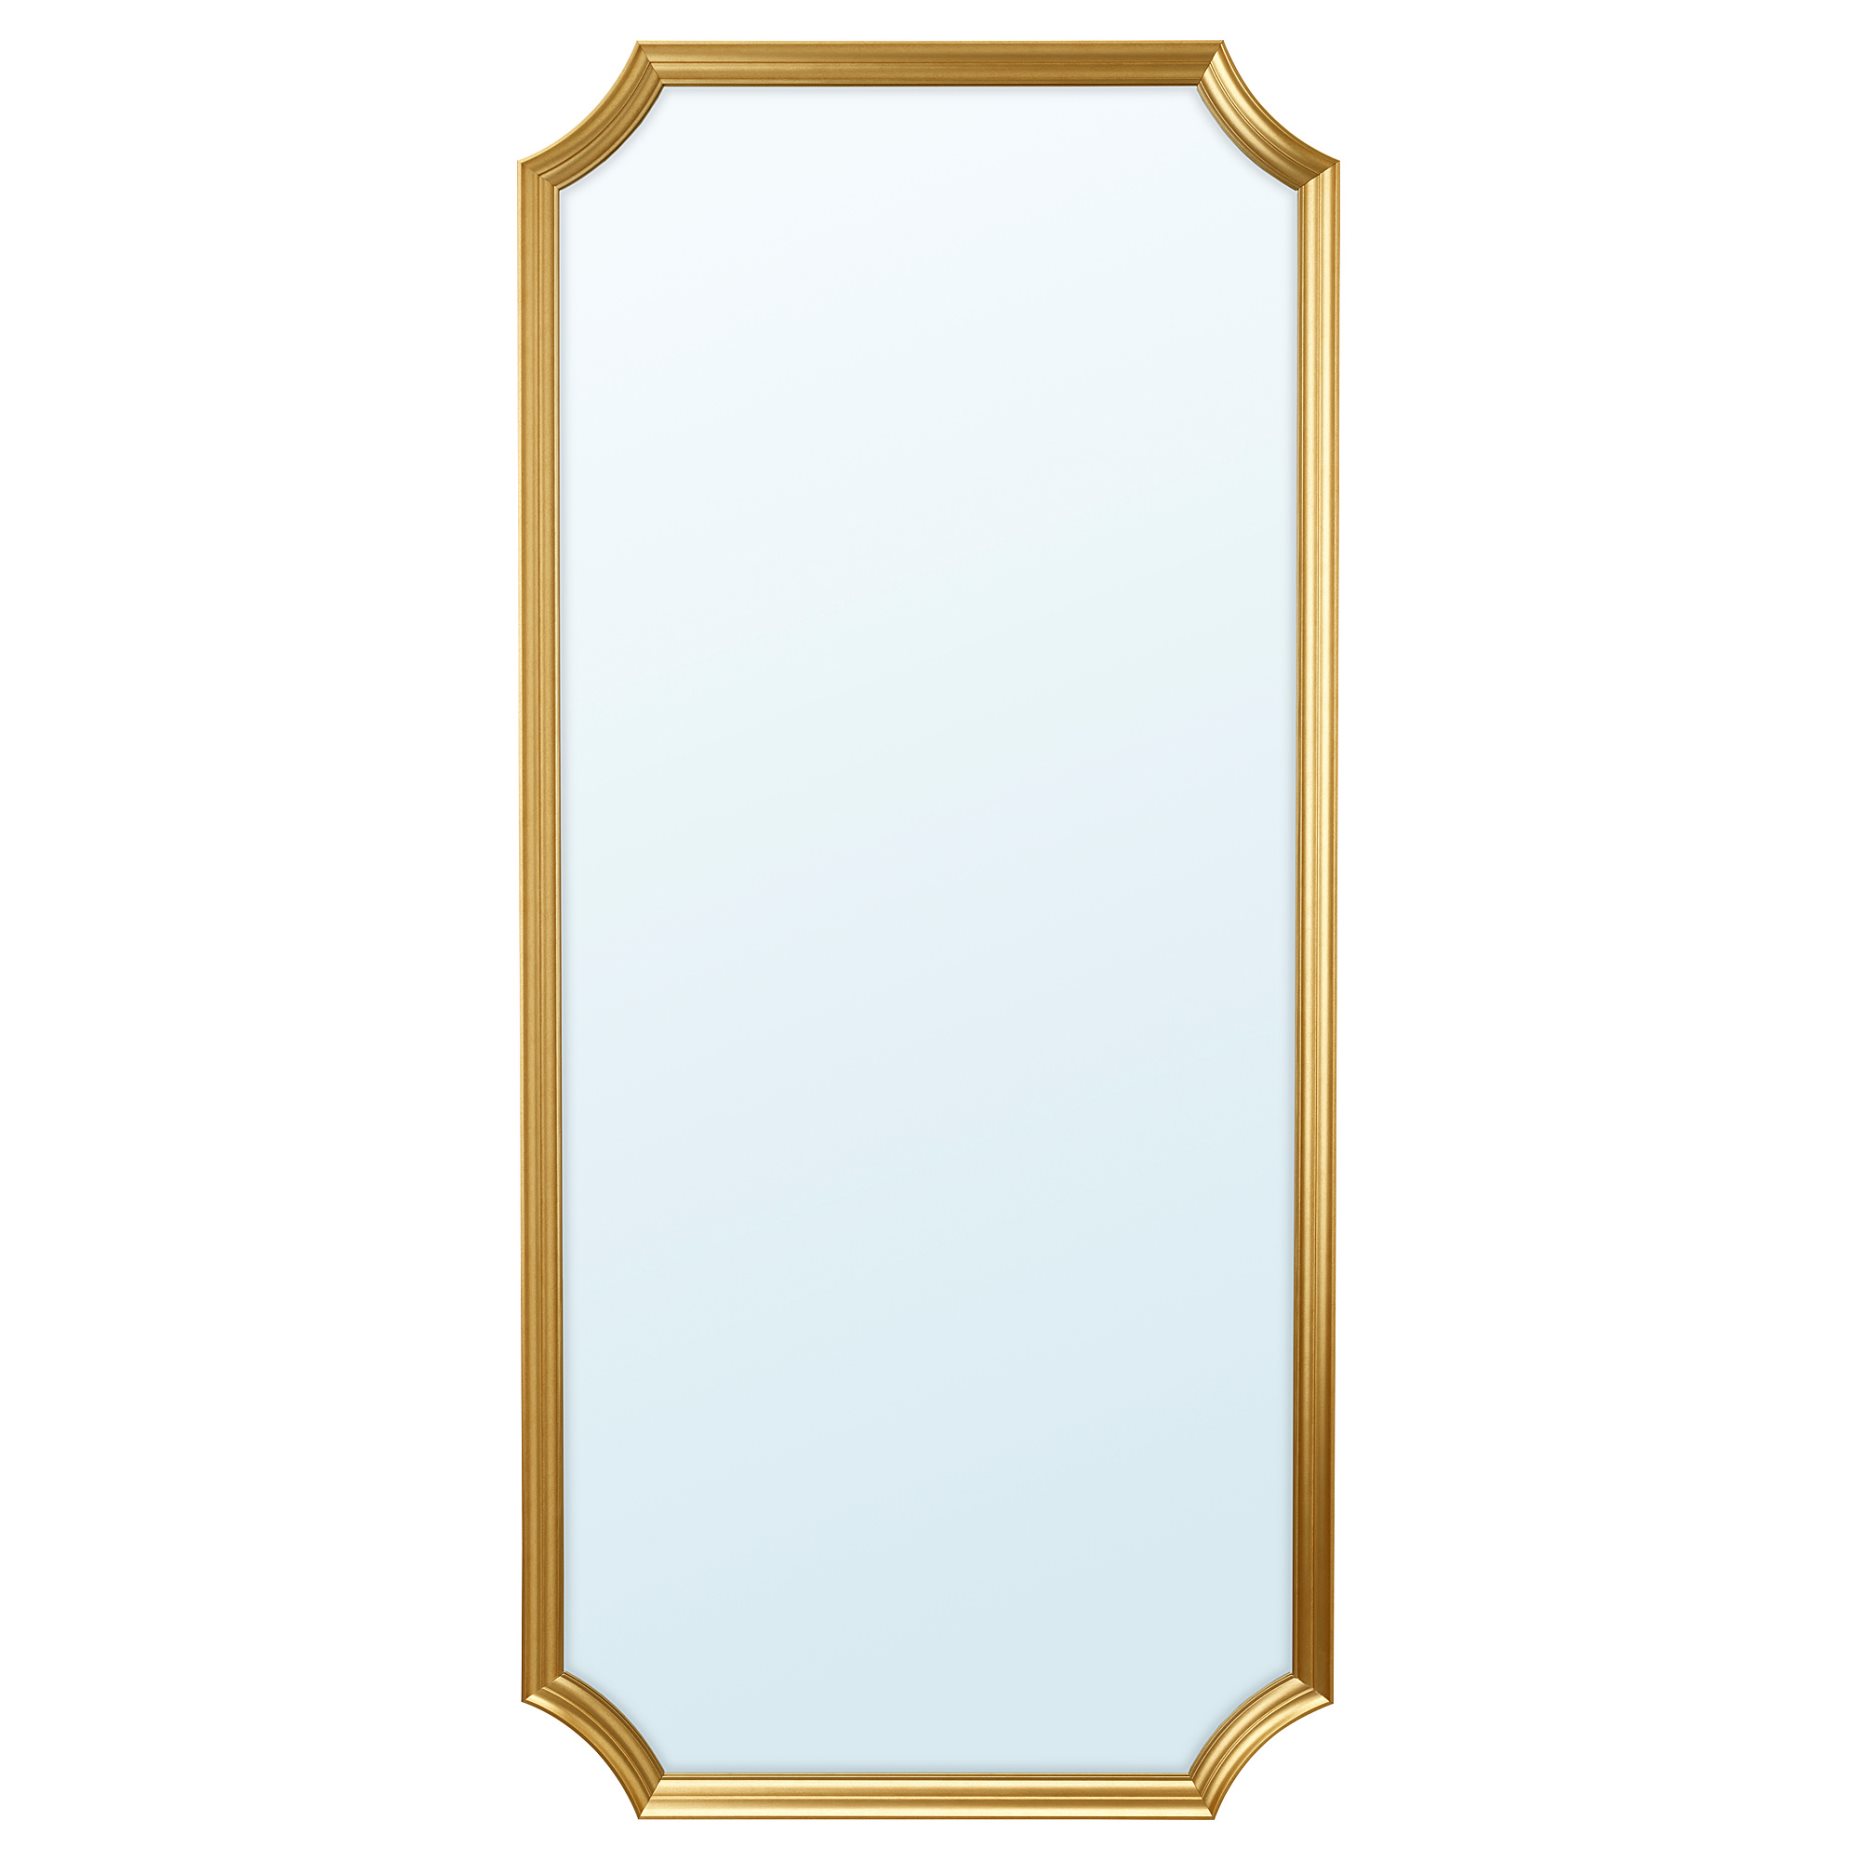 SVANSELE, καθρέφτης, 73x158 cm, 704.792.91